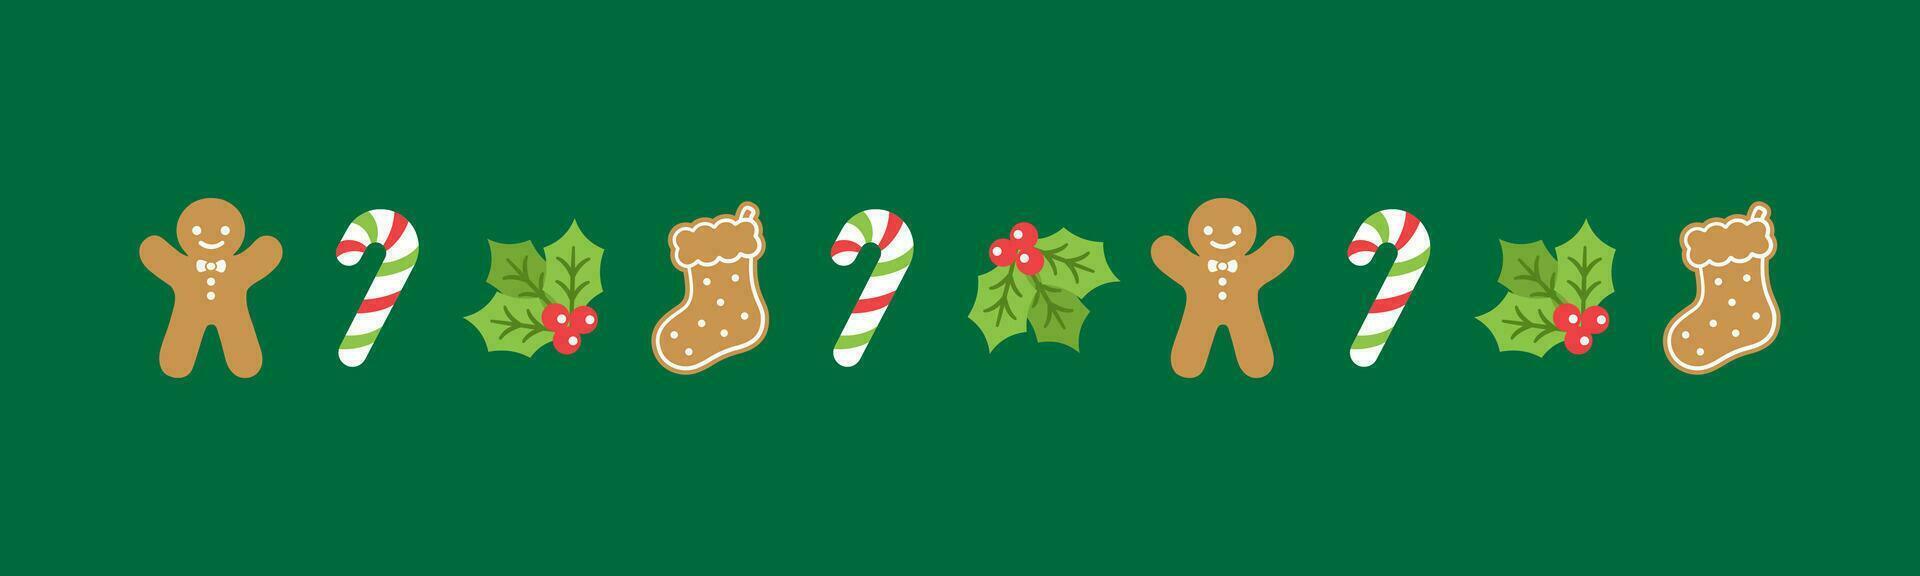 Noël à thème décoratif frontière et texte séparateur, pain d'épice biscuits et bonbons canne modèle. vecteur illustration.